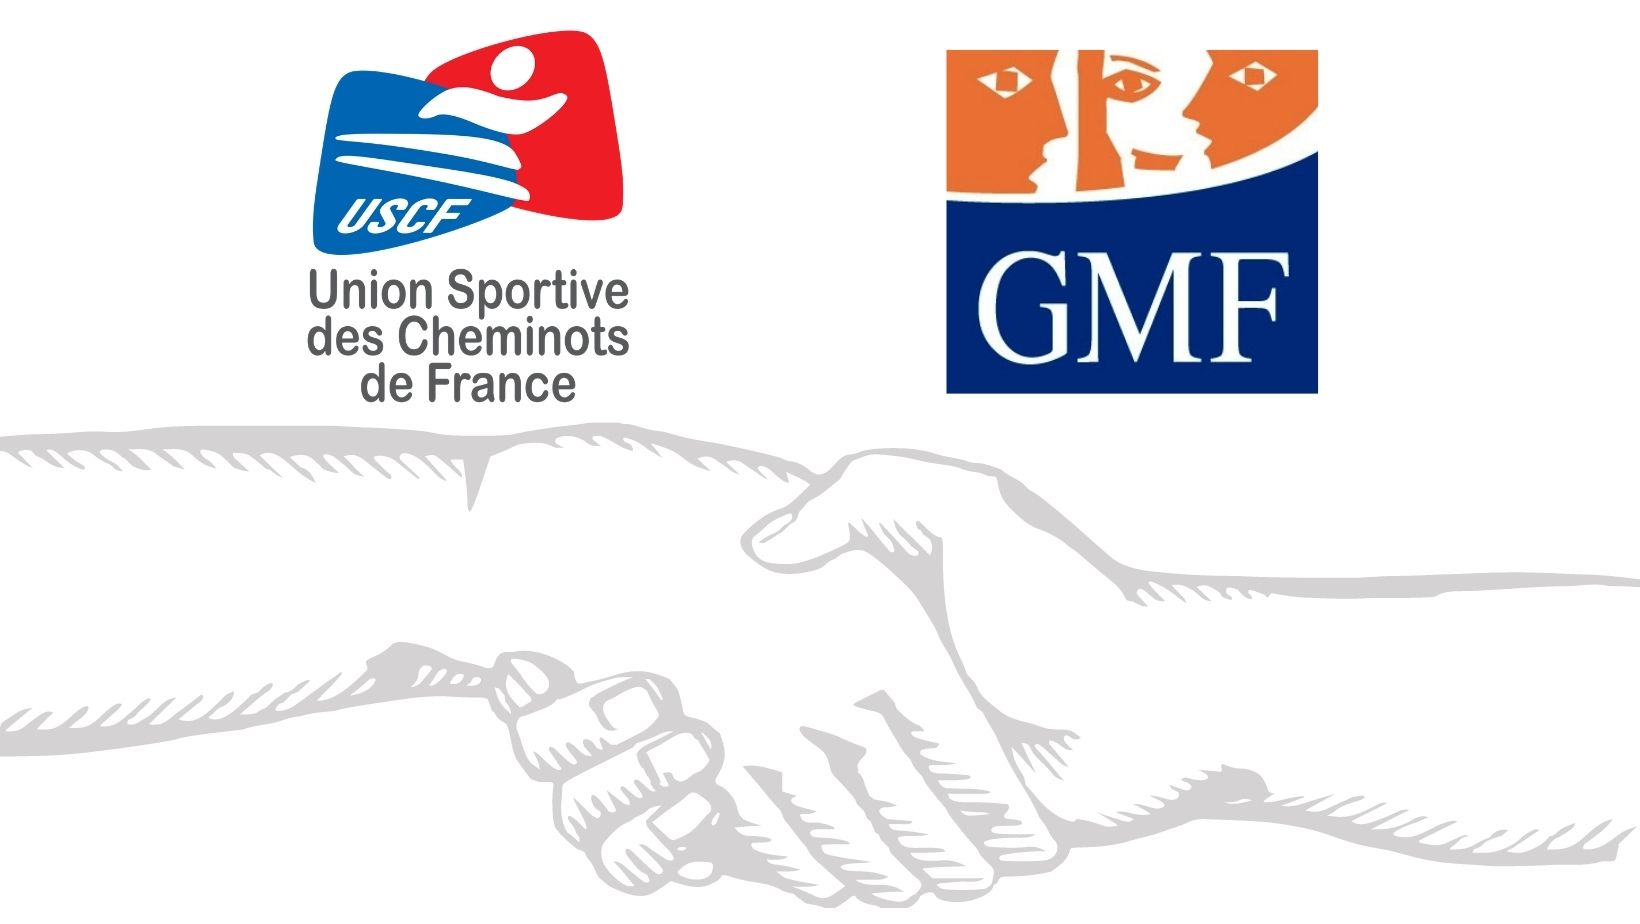 Le partenariat USCF/GMF reconduit pour 2021